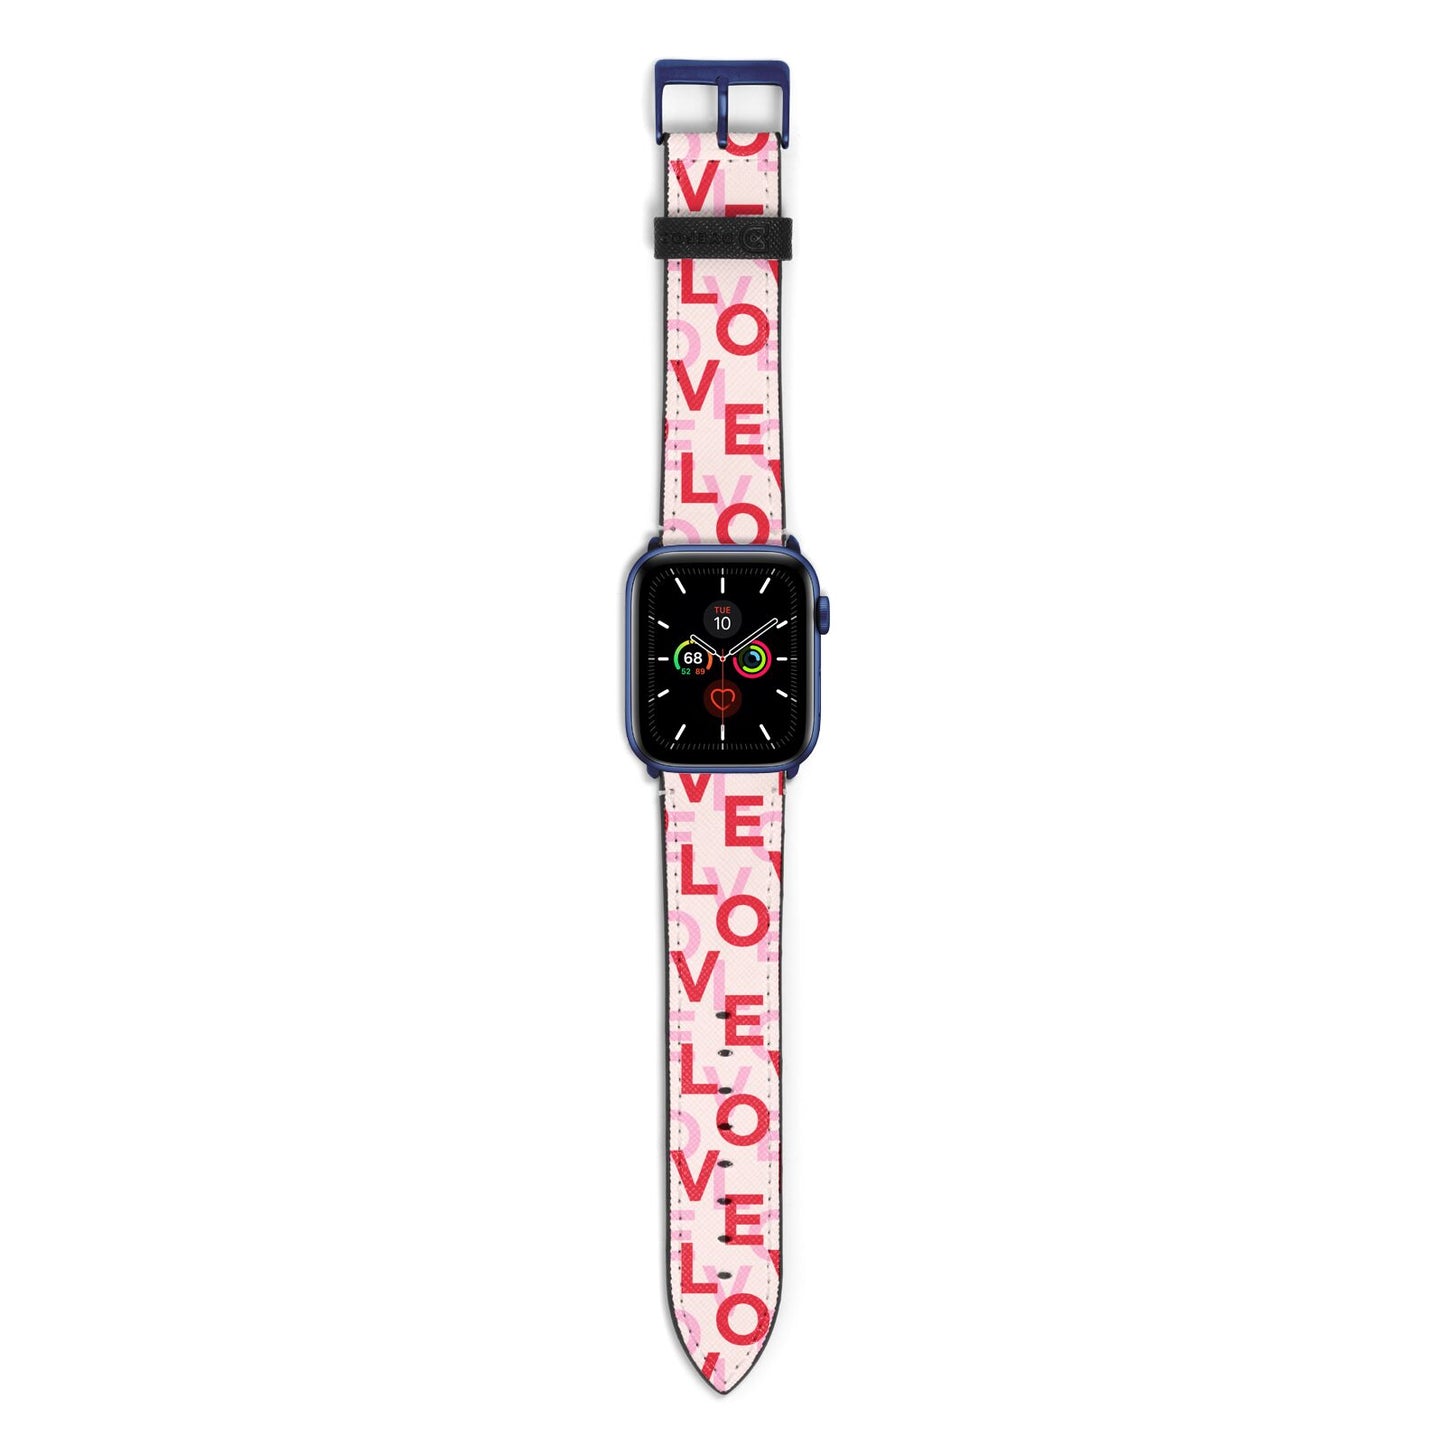 Love Valentine Apple Watch Strap with Blue Hardware